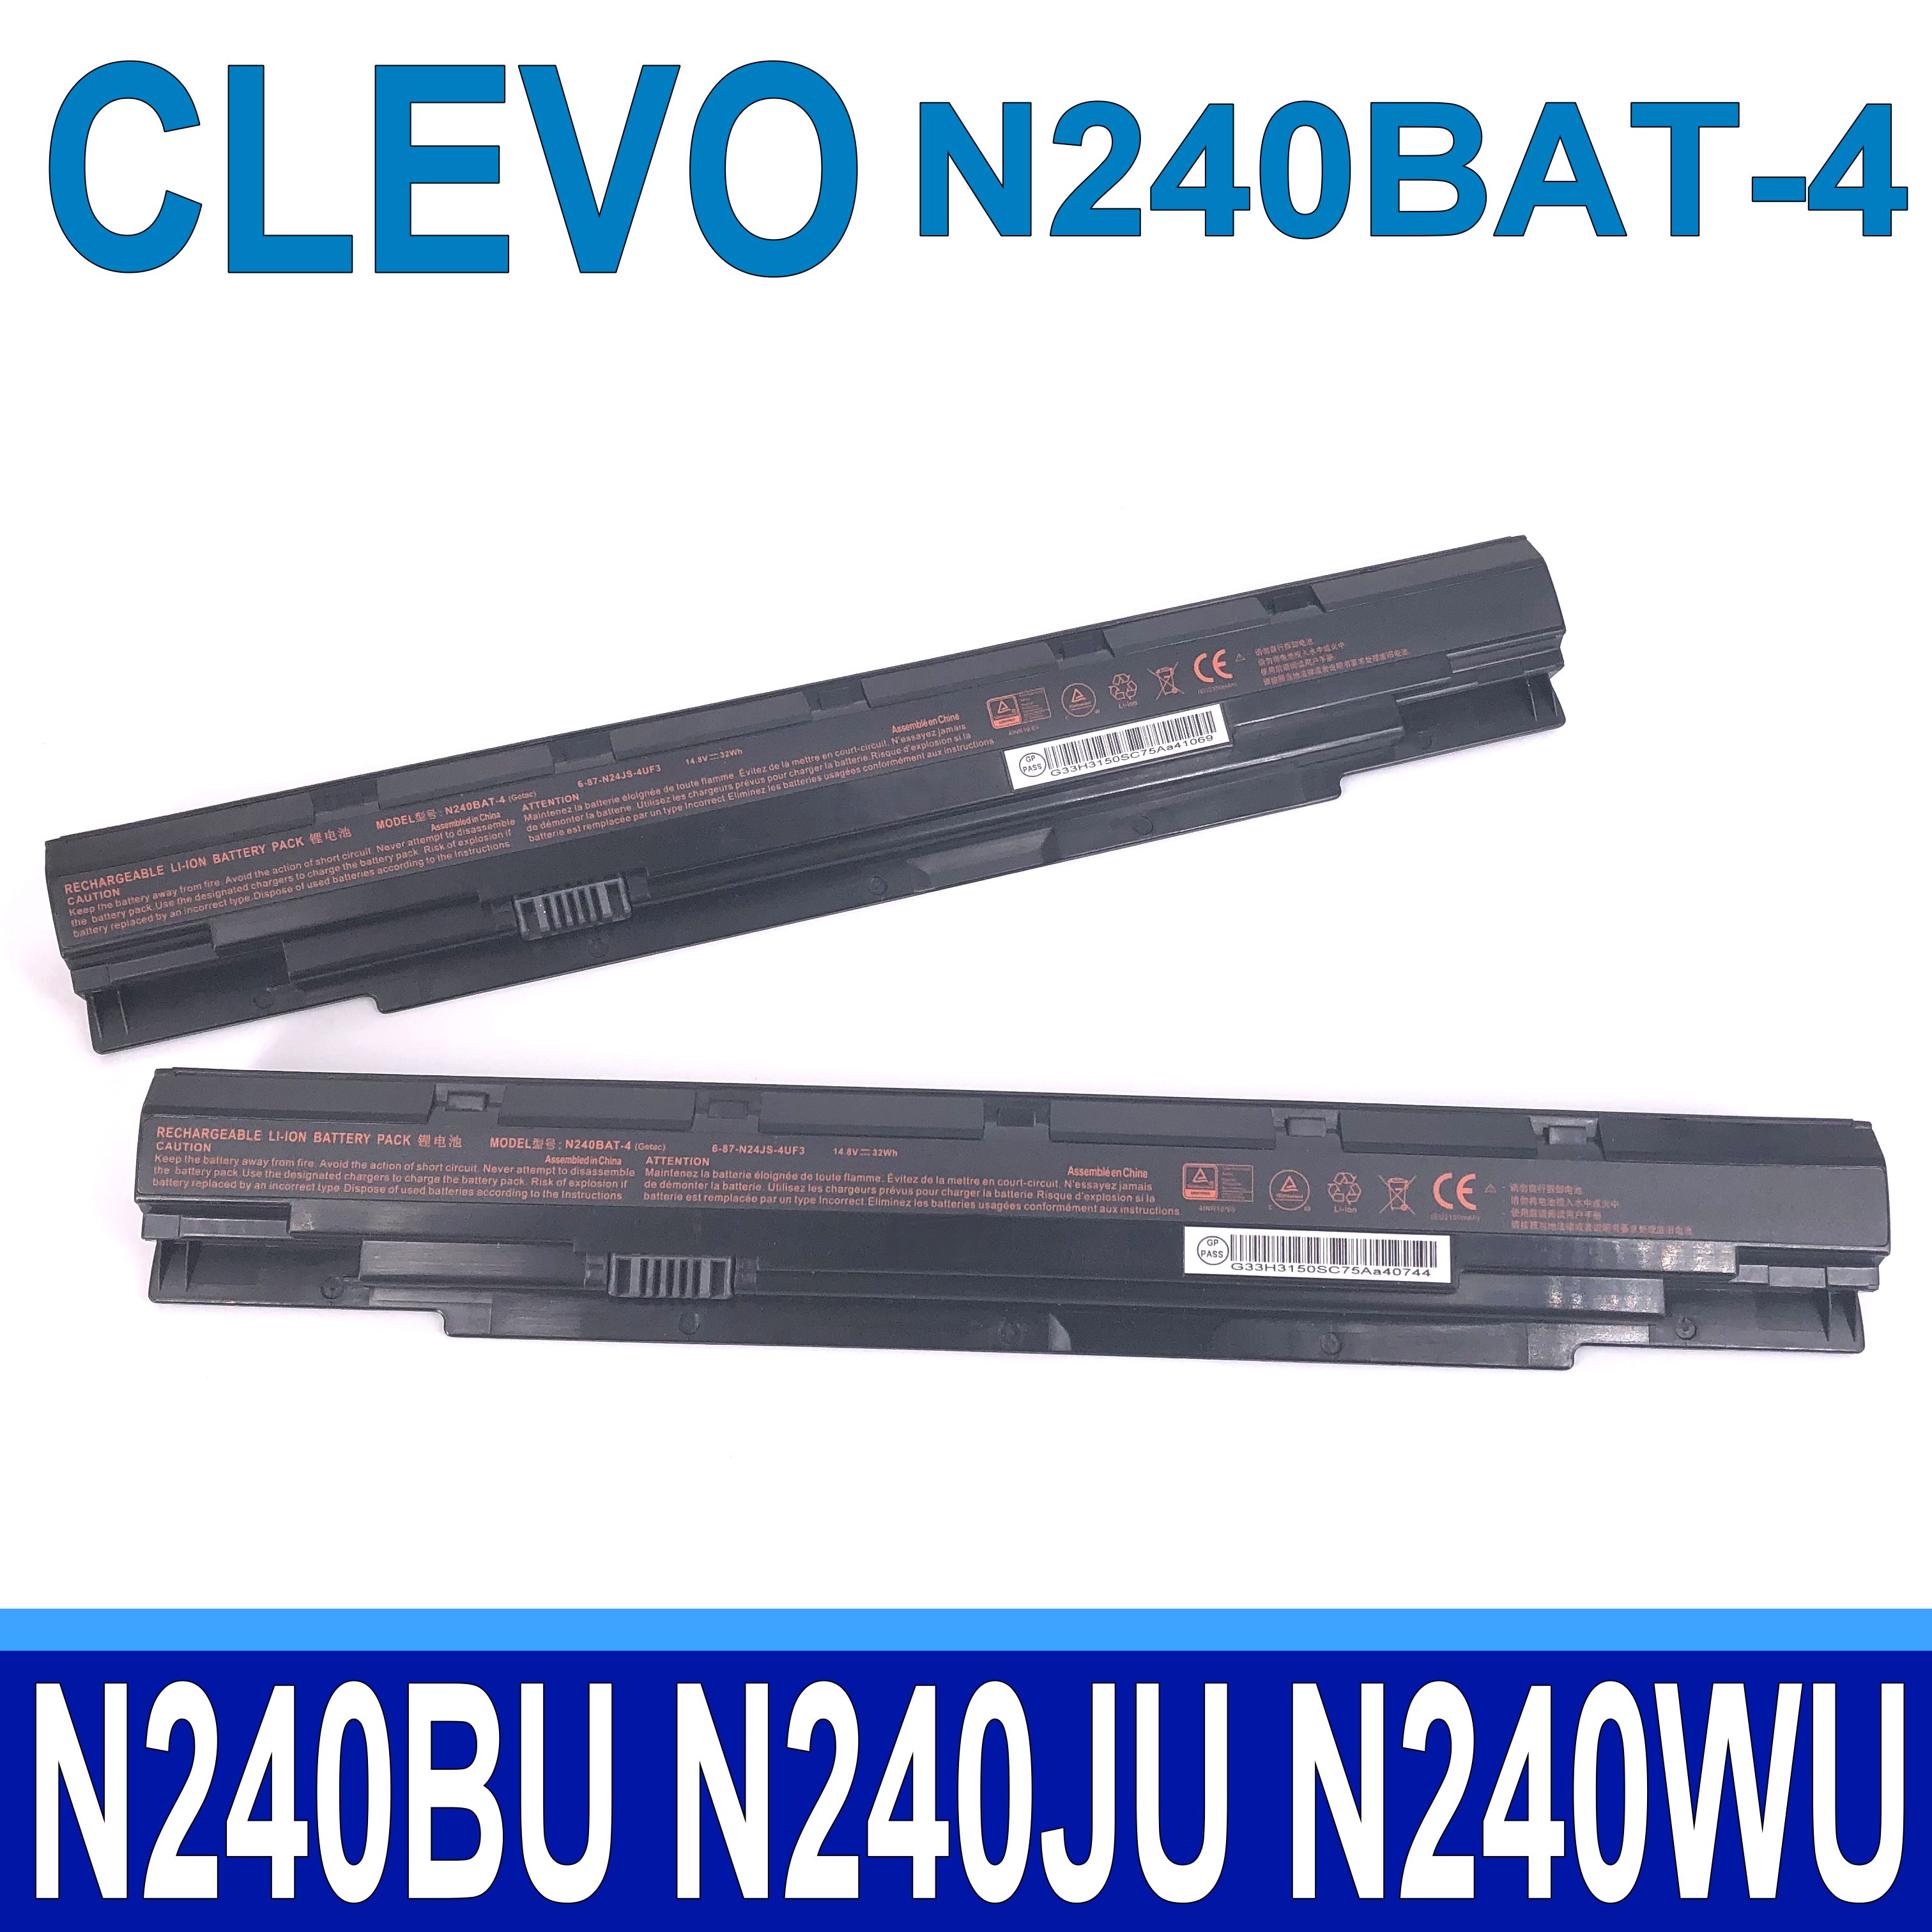 Clevo 藍天 N240BAT-4 原廠電池 N240BAT-3 N240BU N240JU N240WU N250JU N250LU N250WU NP3240 Sager NP3245 S406 6-87-N24JS-42F1 42F2 42F4 42L2 3 4UF1 3 T4510 T4510-G3 PS348 G1 PS358 GA Q35